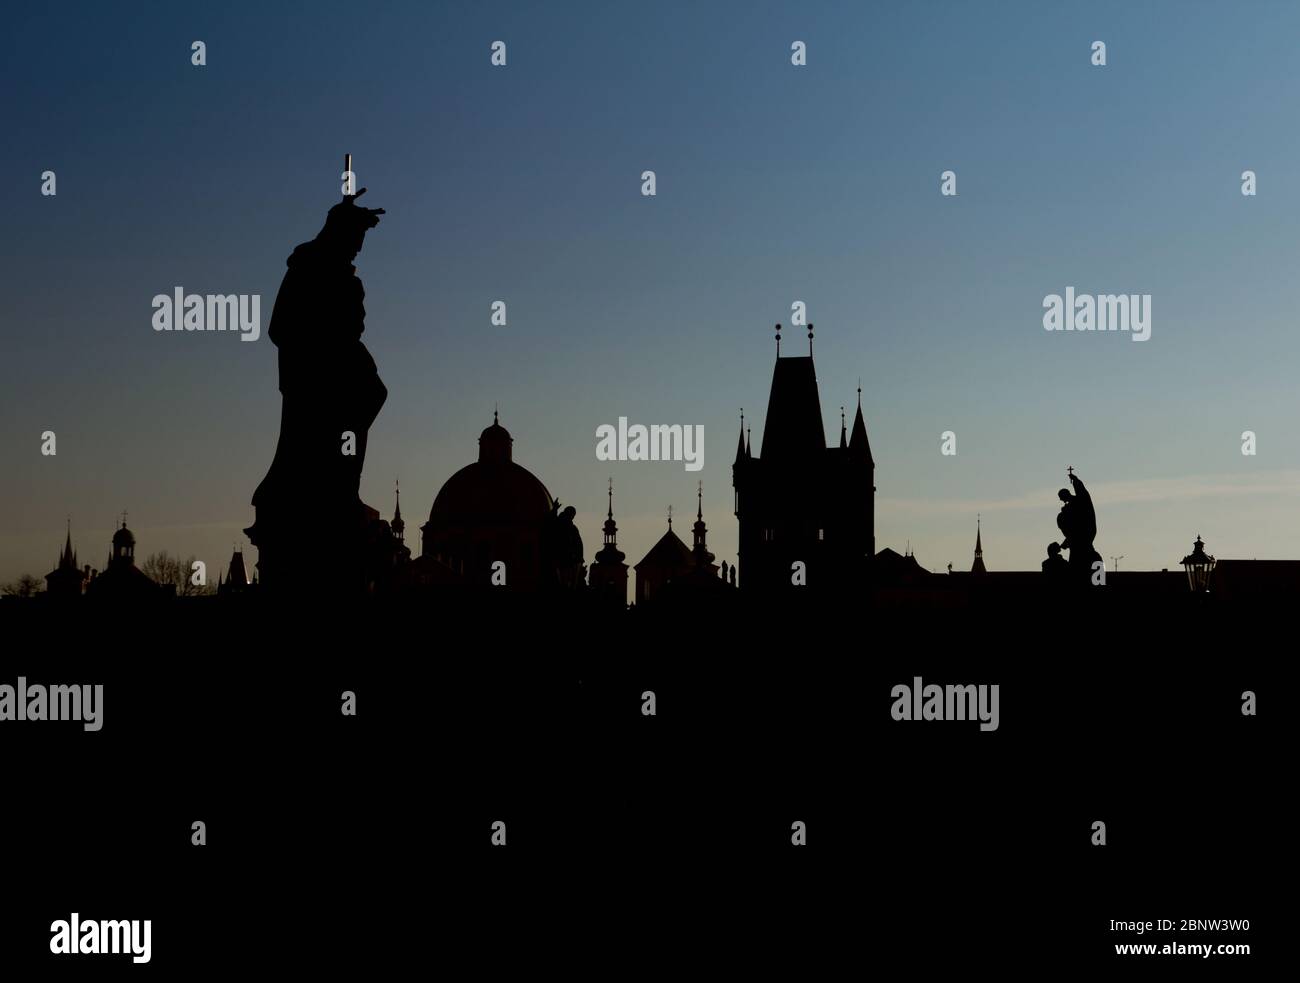 Sonnenuntergang über Prag, Charles Karlov Brücke ist berühmte Attraktion, Weltkulturerbe. Historische Stadt der Hauptstadt der Tschechischen Republik, kulturelles Zentrum Europas. Gotik, Renaissance und Barock. Stockfoto